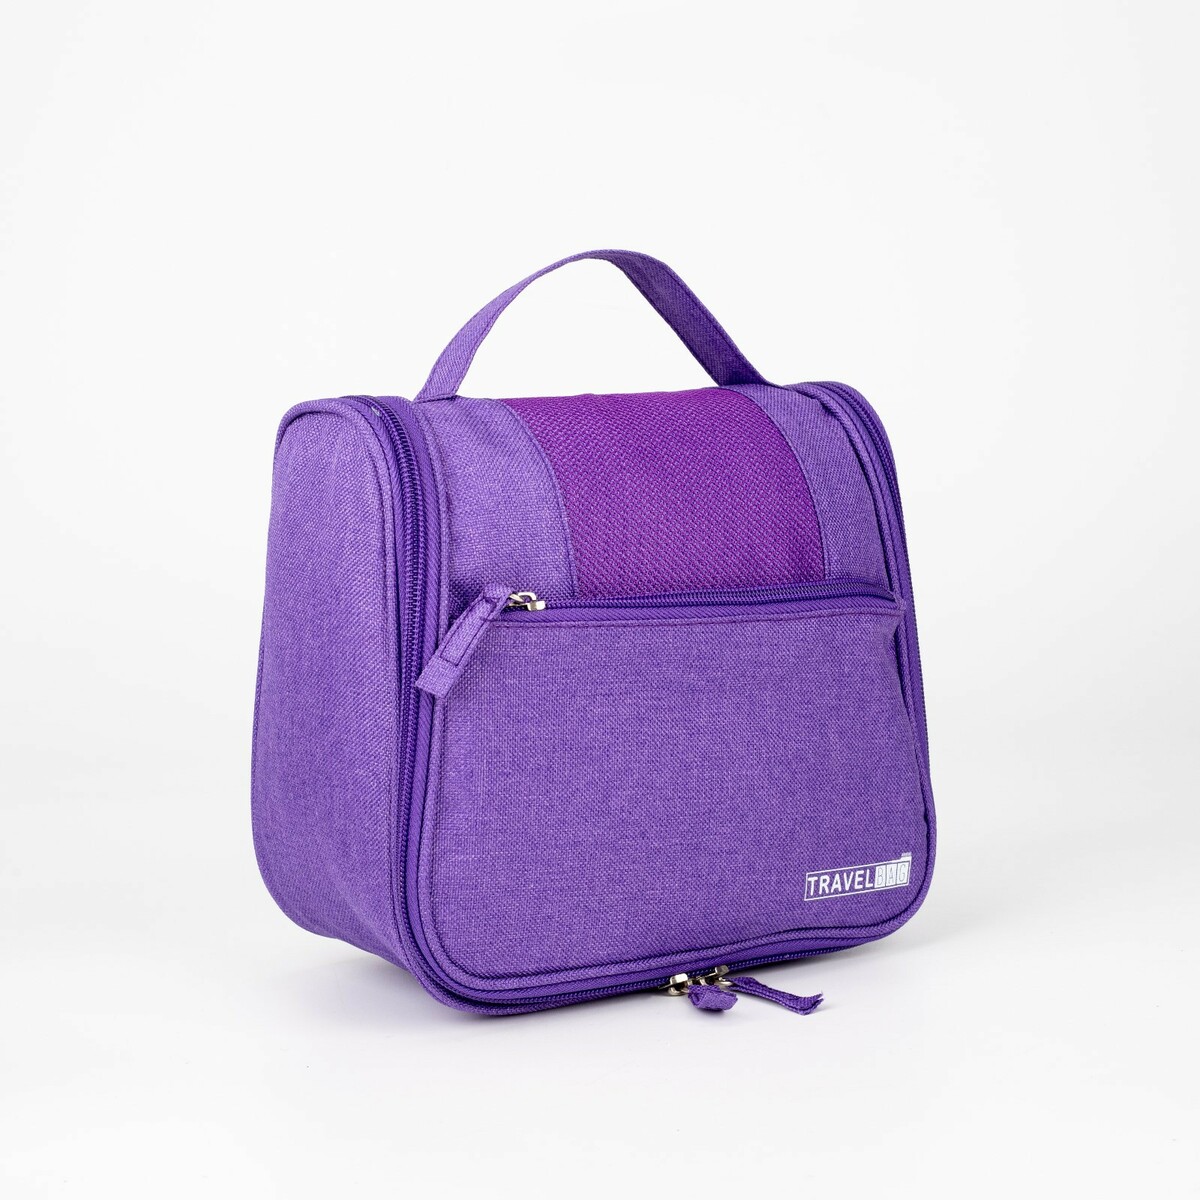 Косметичка-несессер на молнии, с крючком, наружный карман, цвет фиолетовый